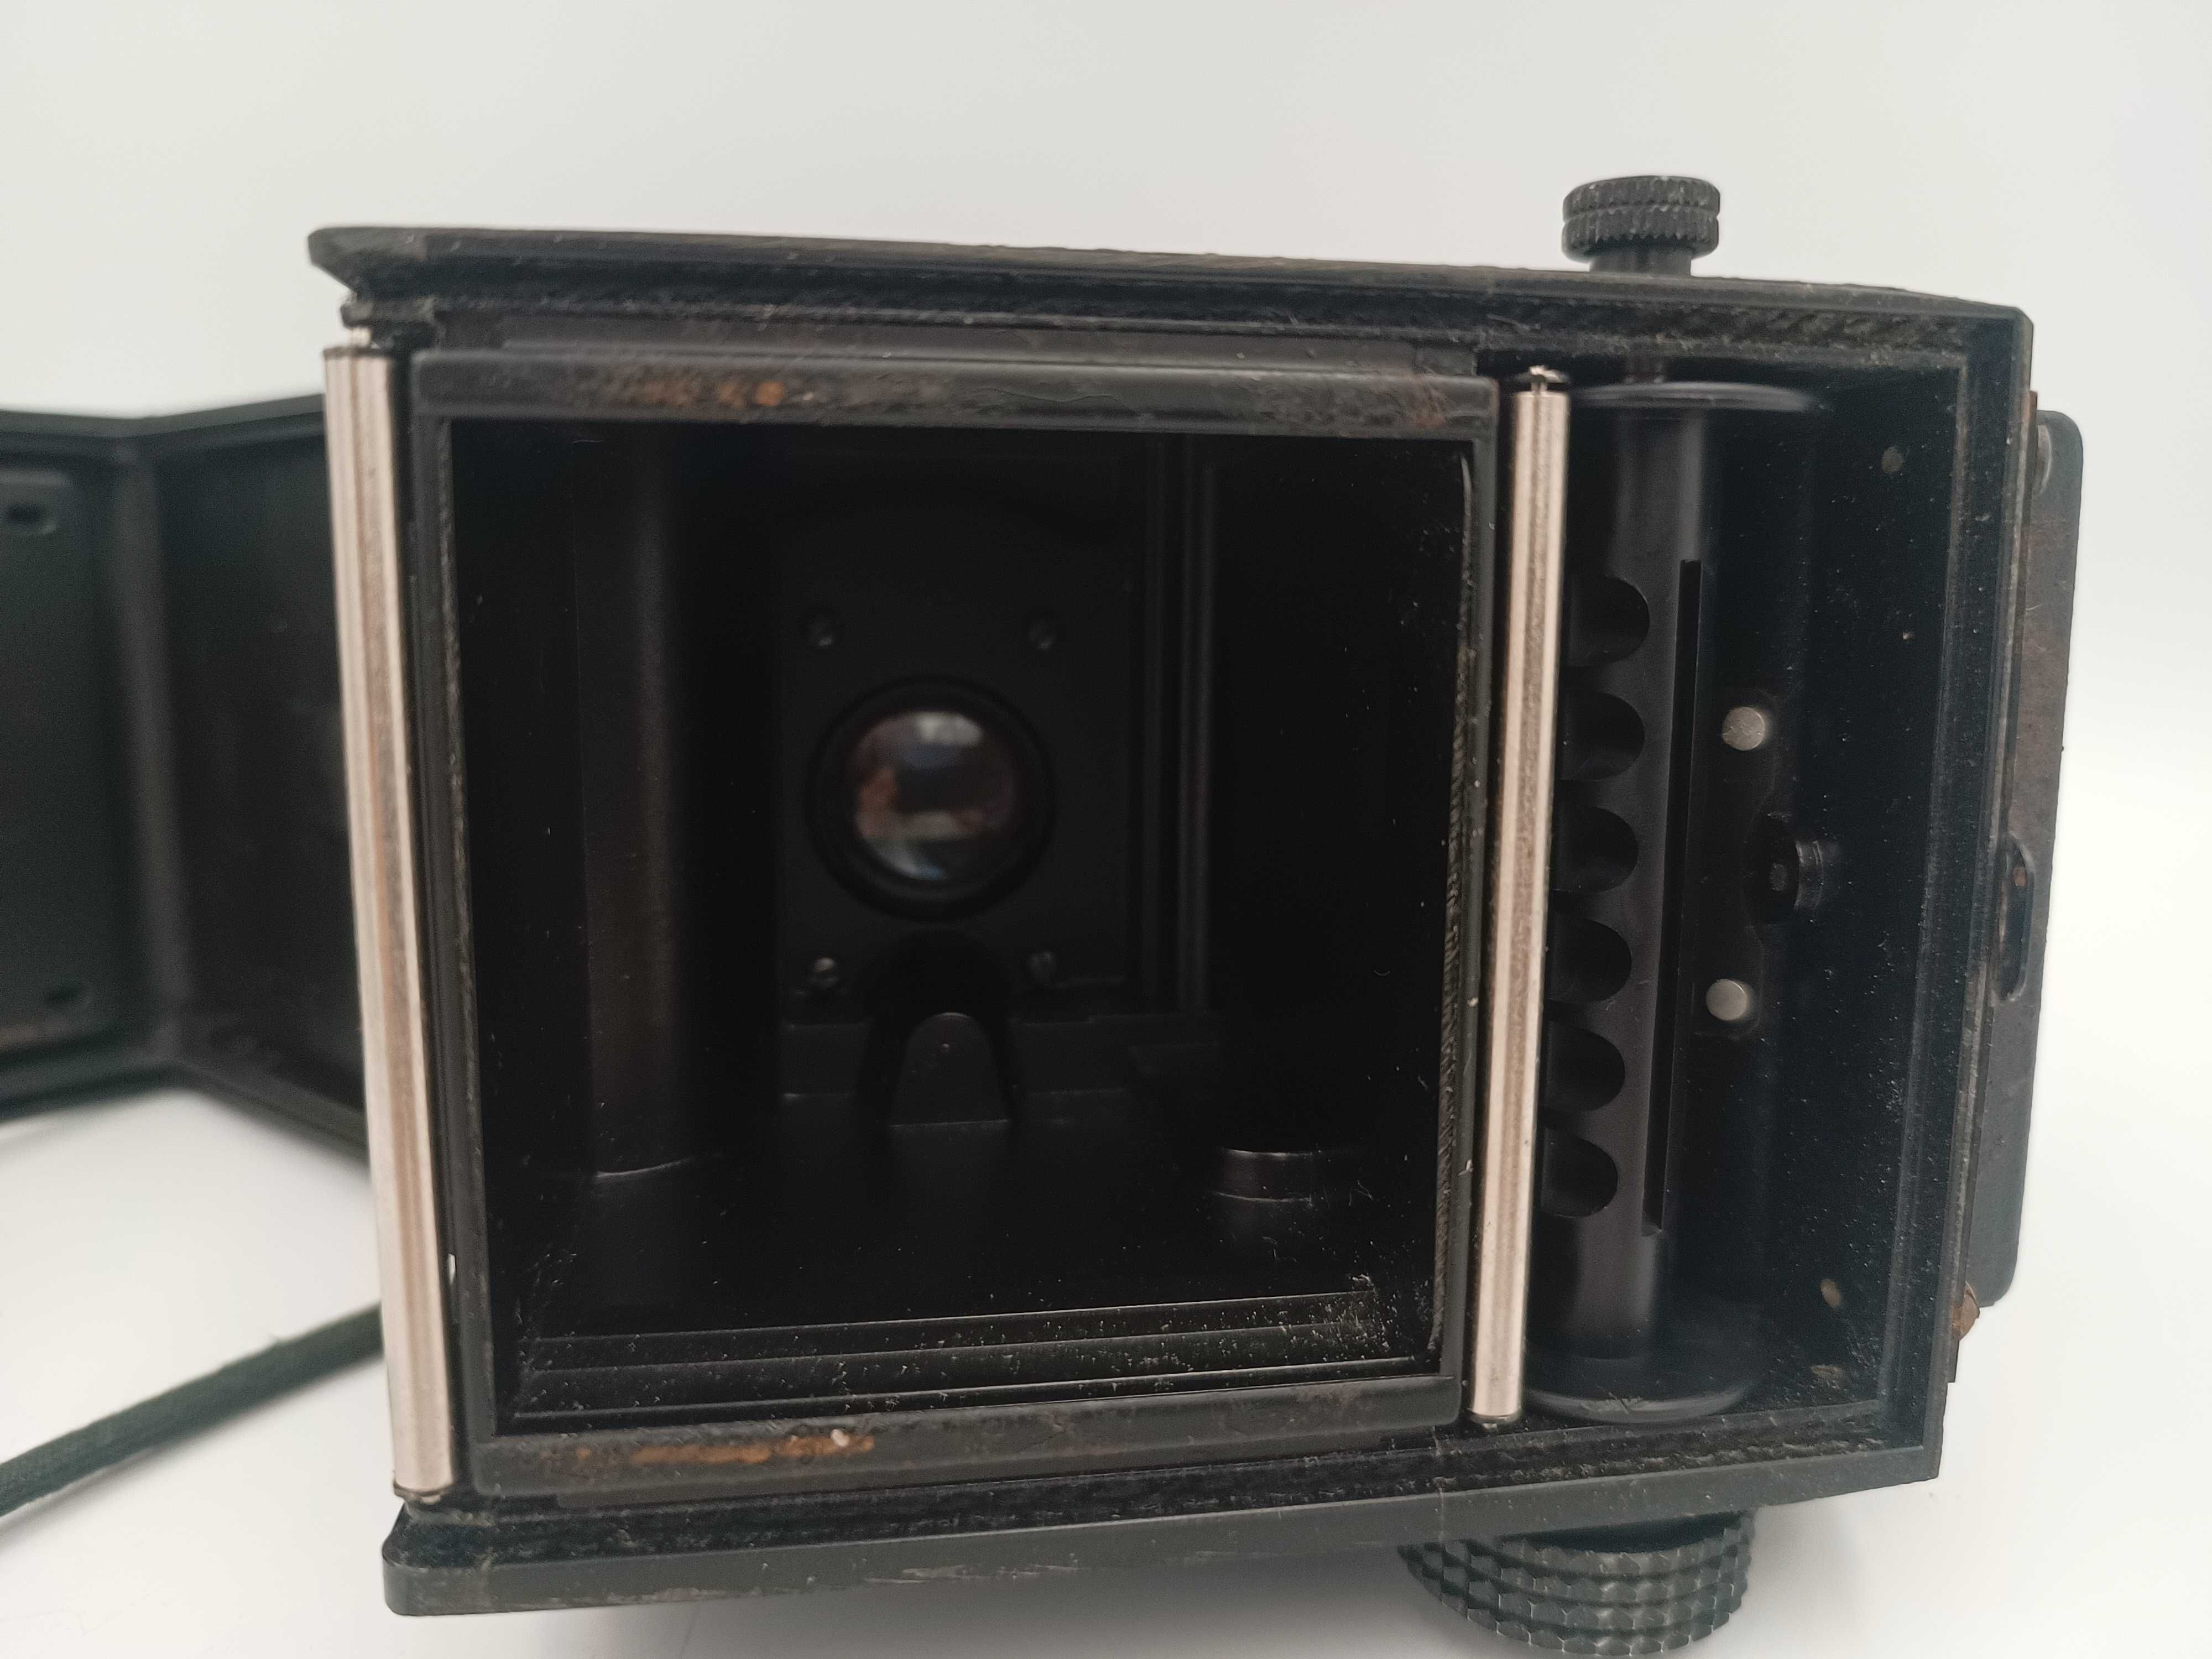 Analogowy aparat fotograficzny Lubitel 166B + etui pokrowiec